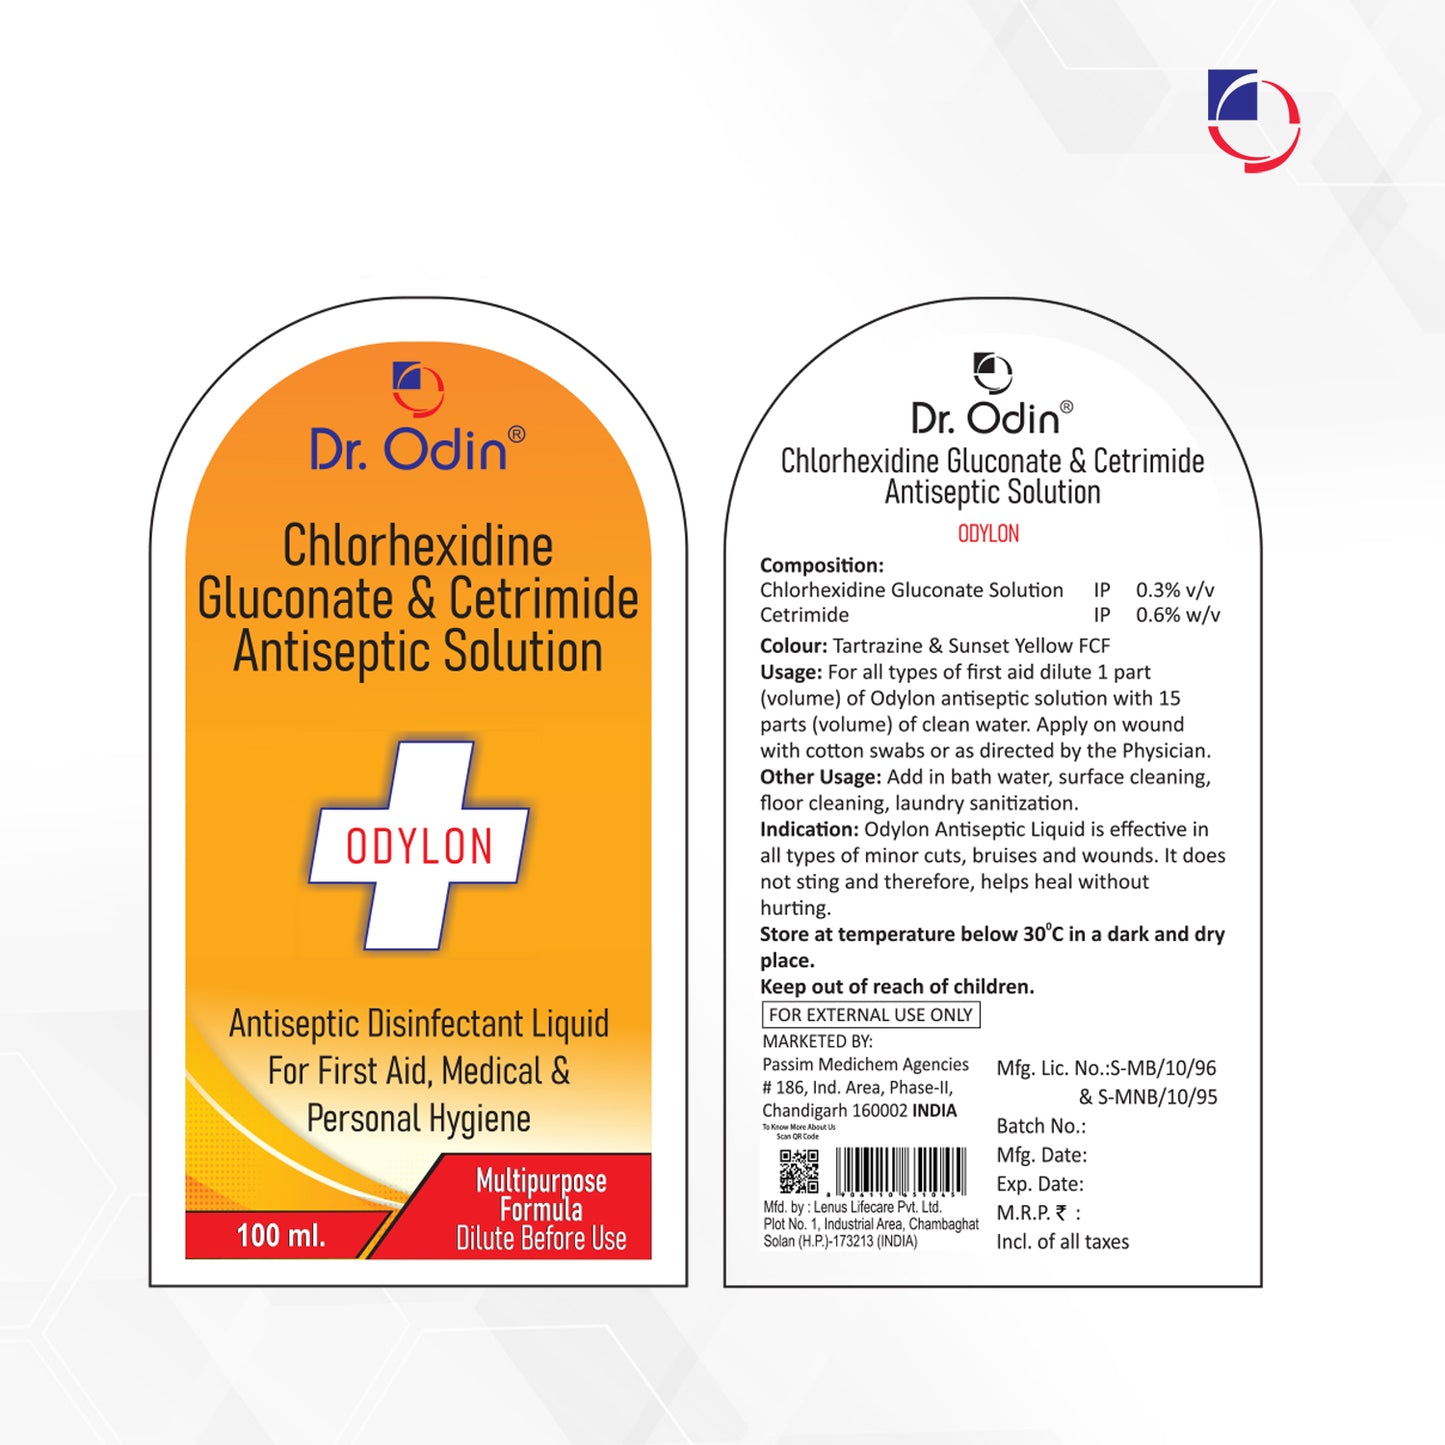 Odylon Antiseptic Disinfectant Liquid 100ml